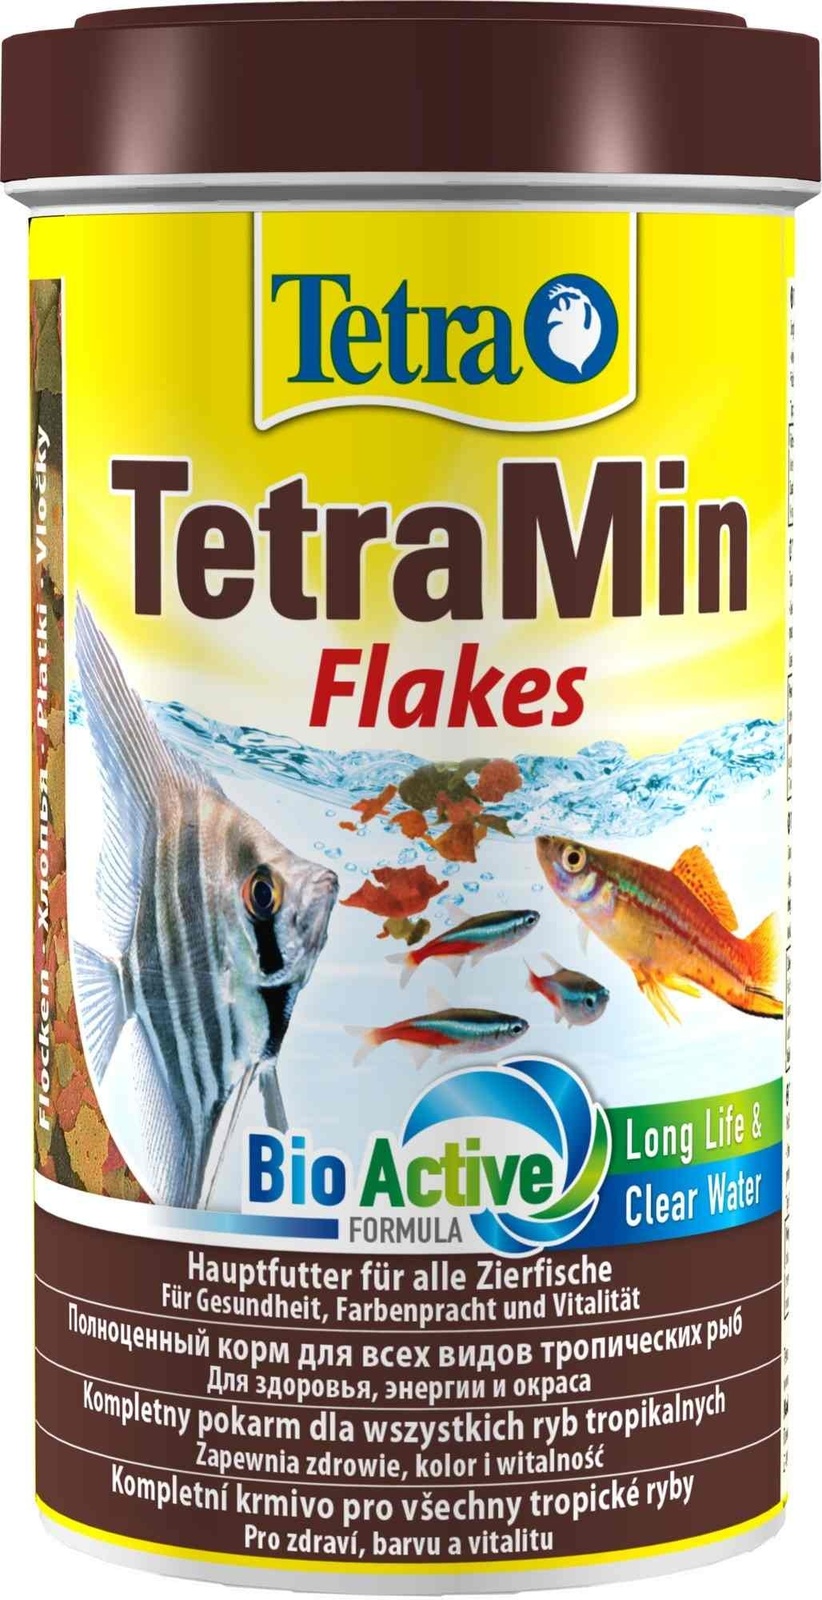 Tetra (корма) Tetra (корма) корм для всех видов тропических рыб. хлопья TetraMin Flakes (100 г) tetra корма tetra корма корм для всех видов тропических рыб гранулы tetramin granules 100 г